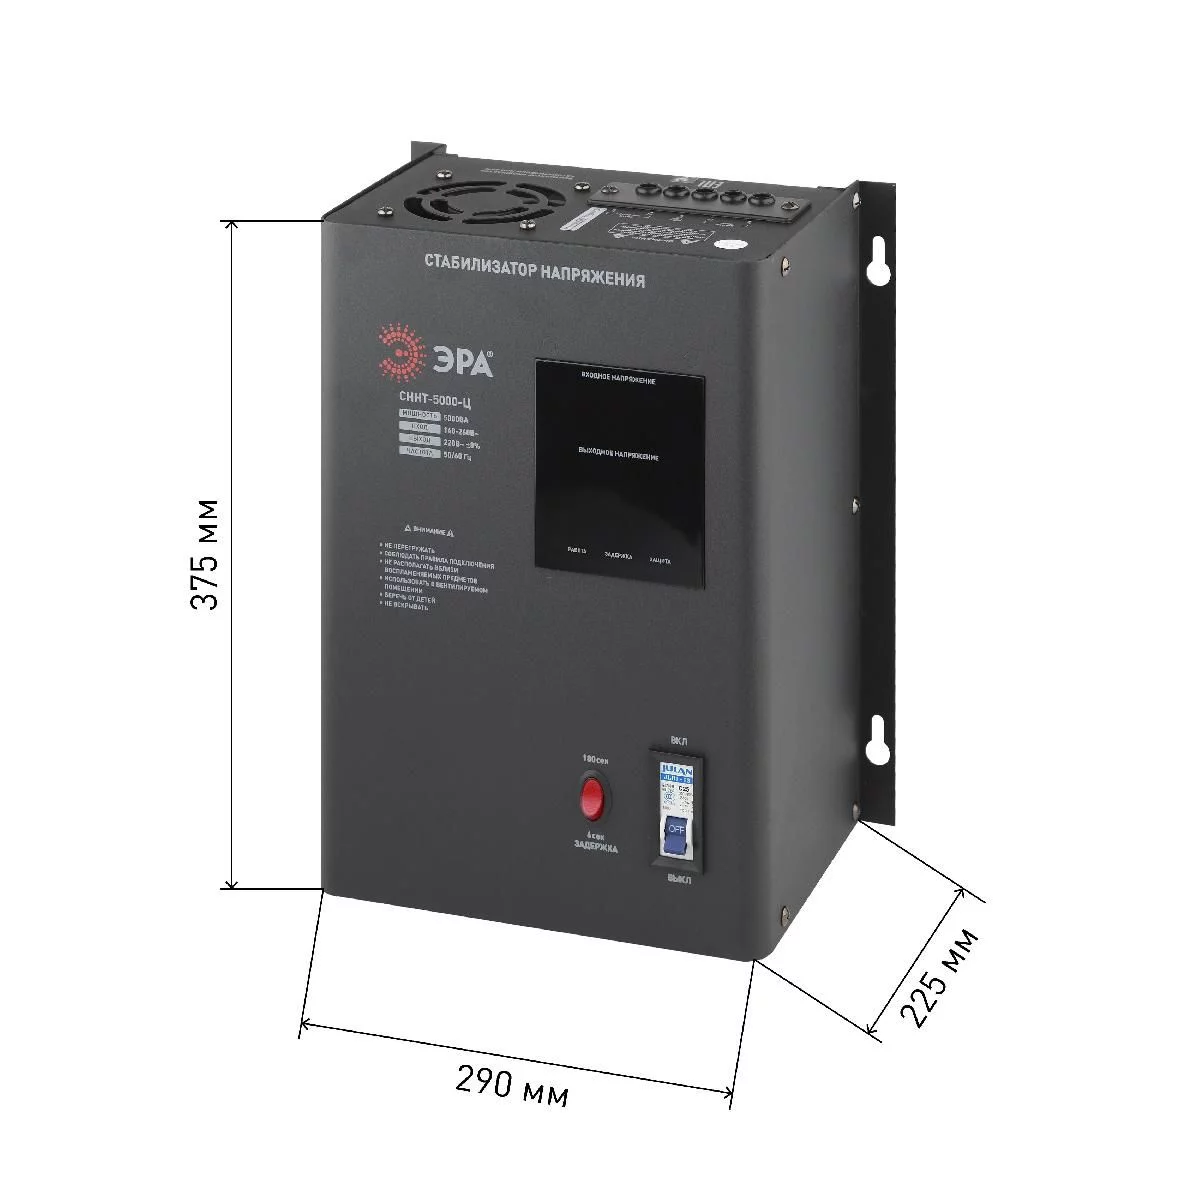 СННТ-5000-Ц ЭРА Стабилизатор напряжения настенный, ц.д., 140-260В/220/В, 5000ВА (40)